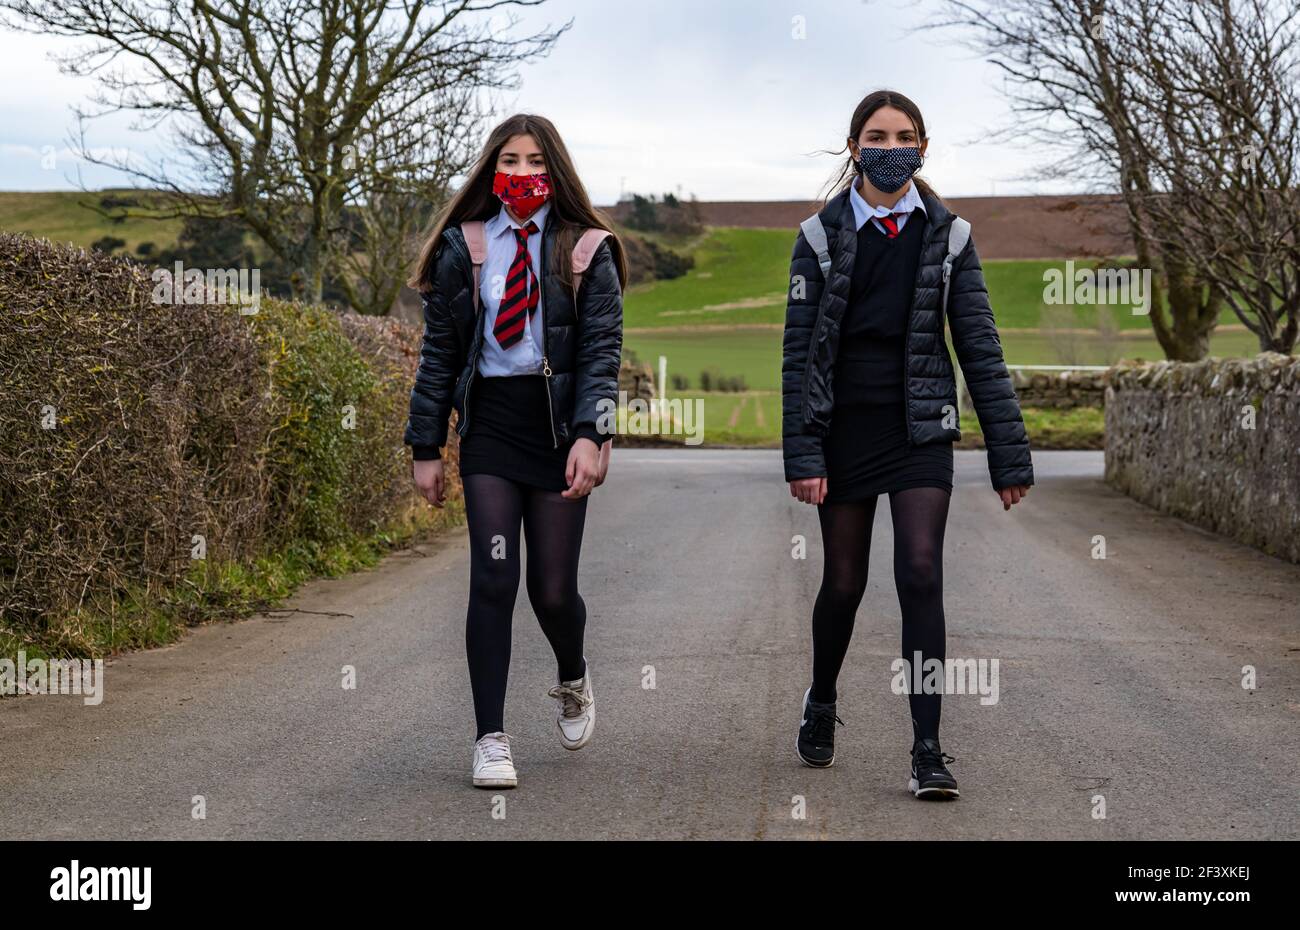 Twin girls, secondary schoolchildren in school uniform walking on country road, East Lothian, Scotland, UK Stock Photo